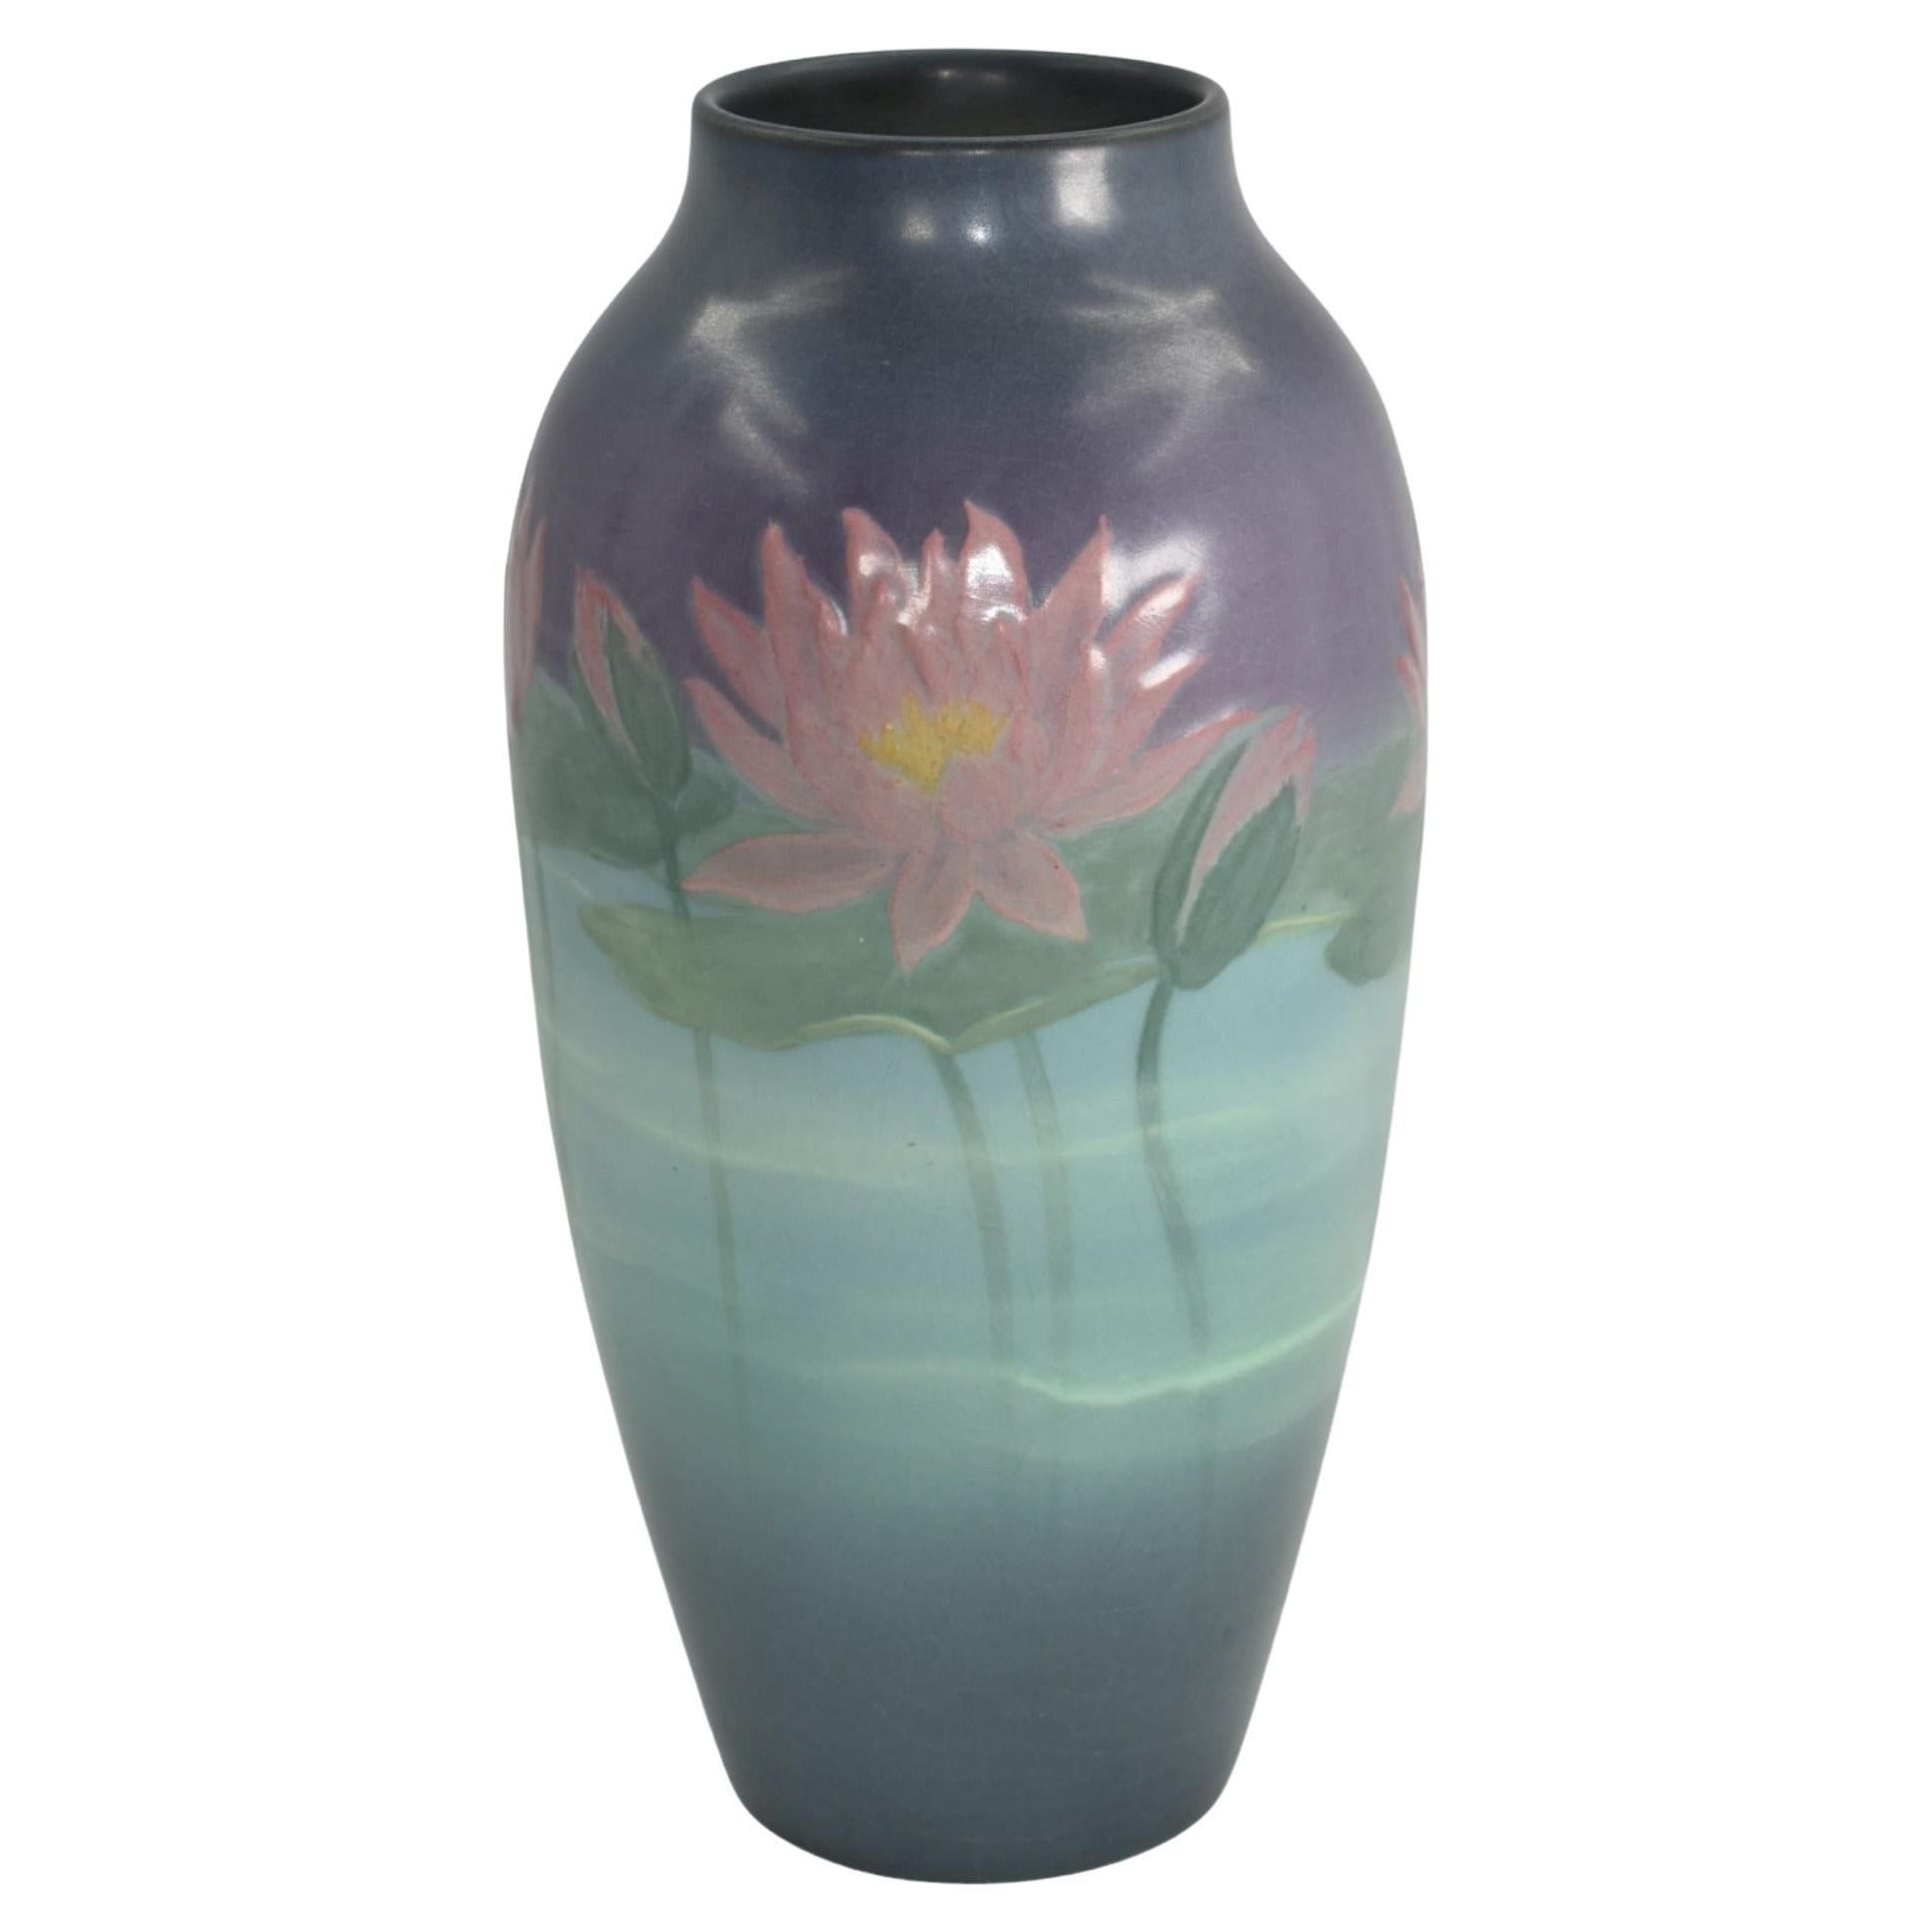 Rookwood 1925 Vintage Arts And Crafts Pottery Ceramic Flower Vase 977 (Hurley) For Sale